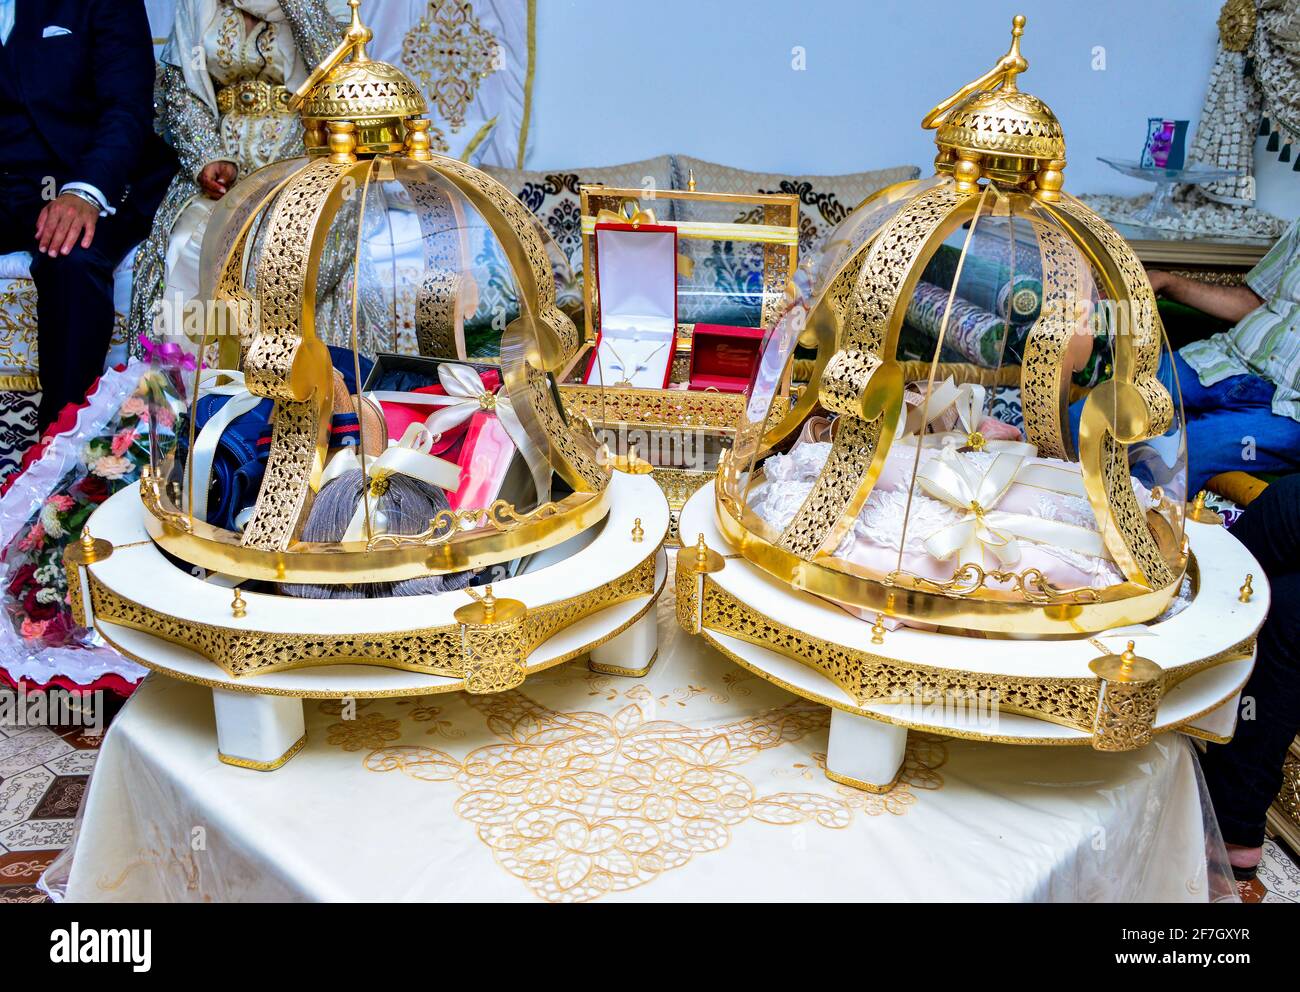 Le Tyafer marocain, des contenants-cadeaux traditionnels pour la cérémonie de mariage, décoré avec des broderies dorées ornées. Mariage marocain. Banque D'Images